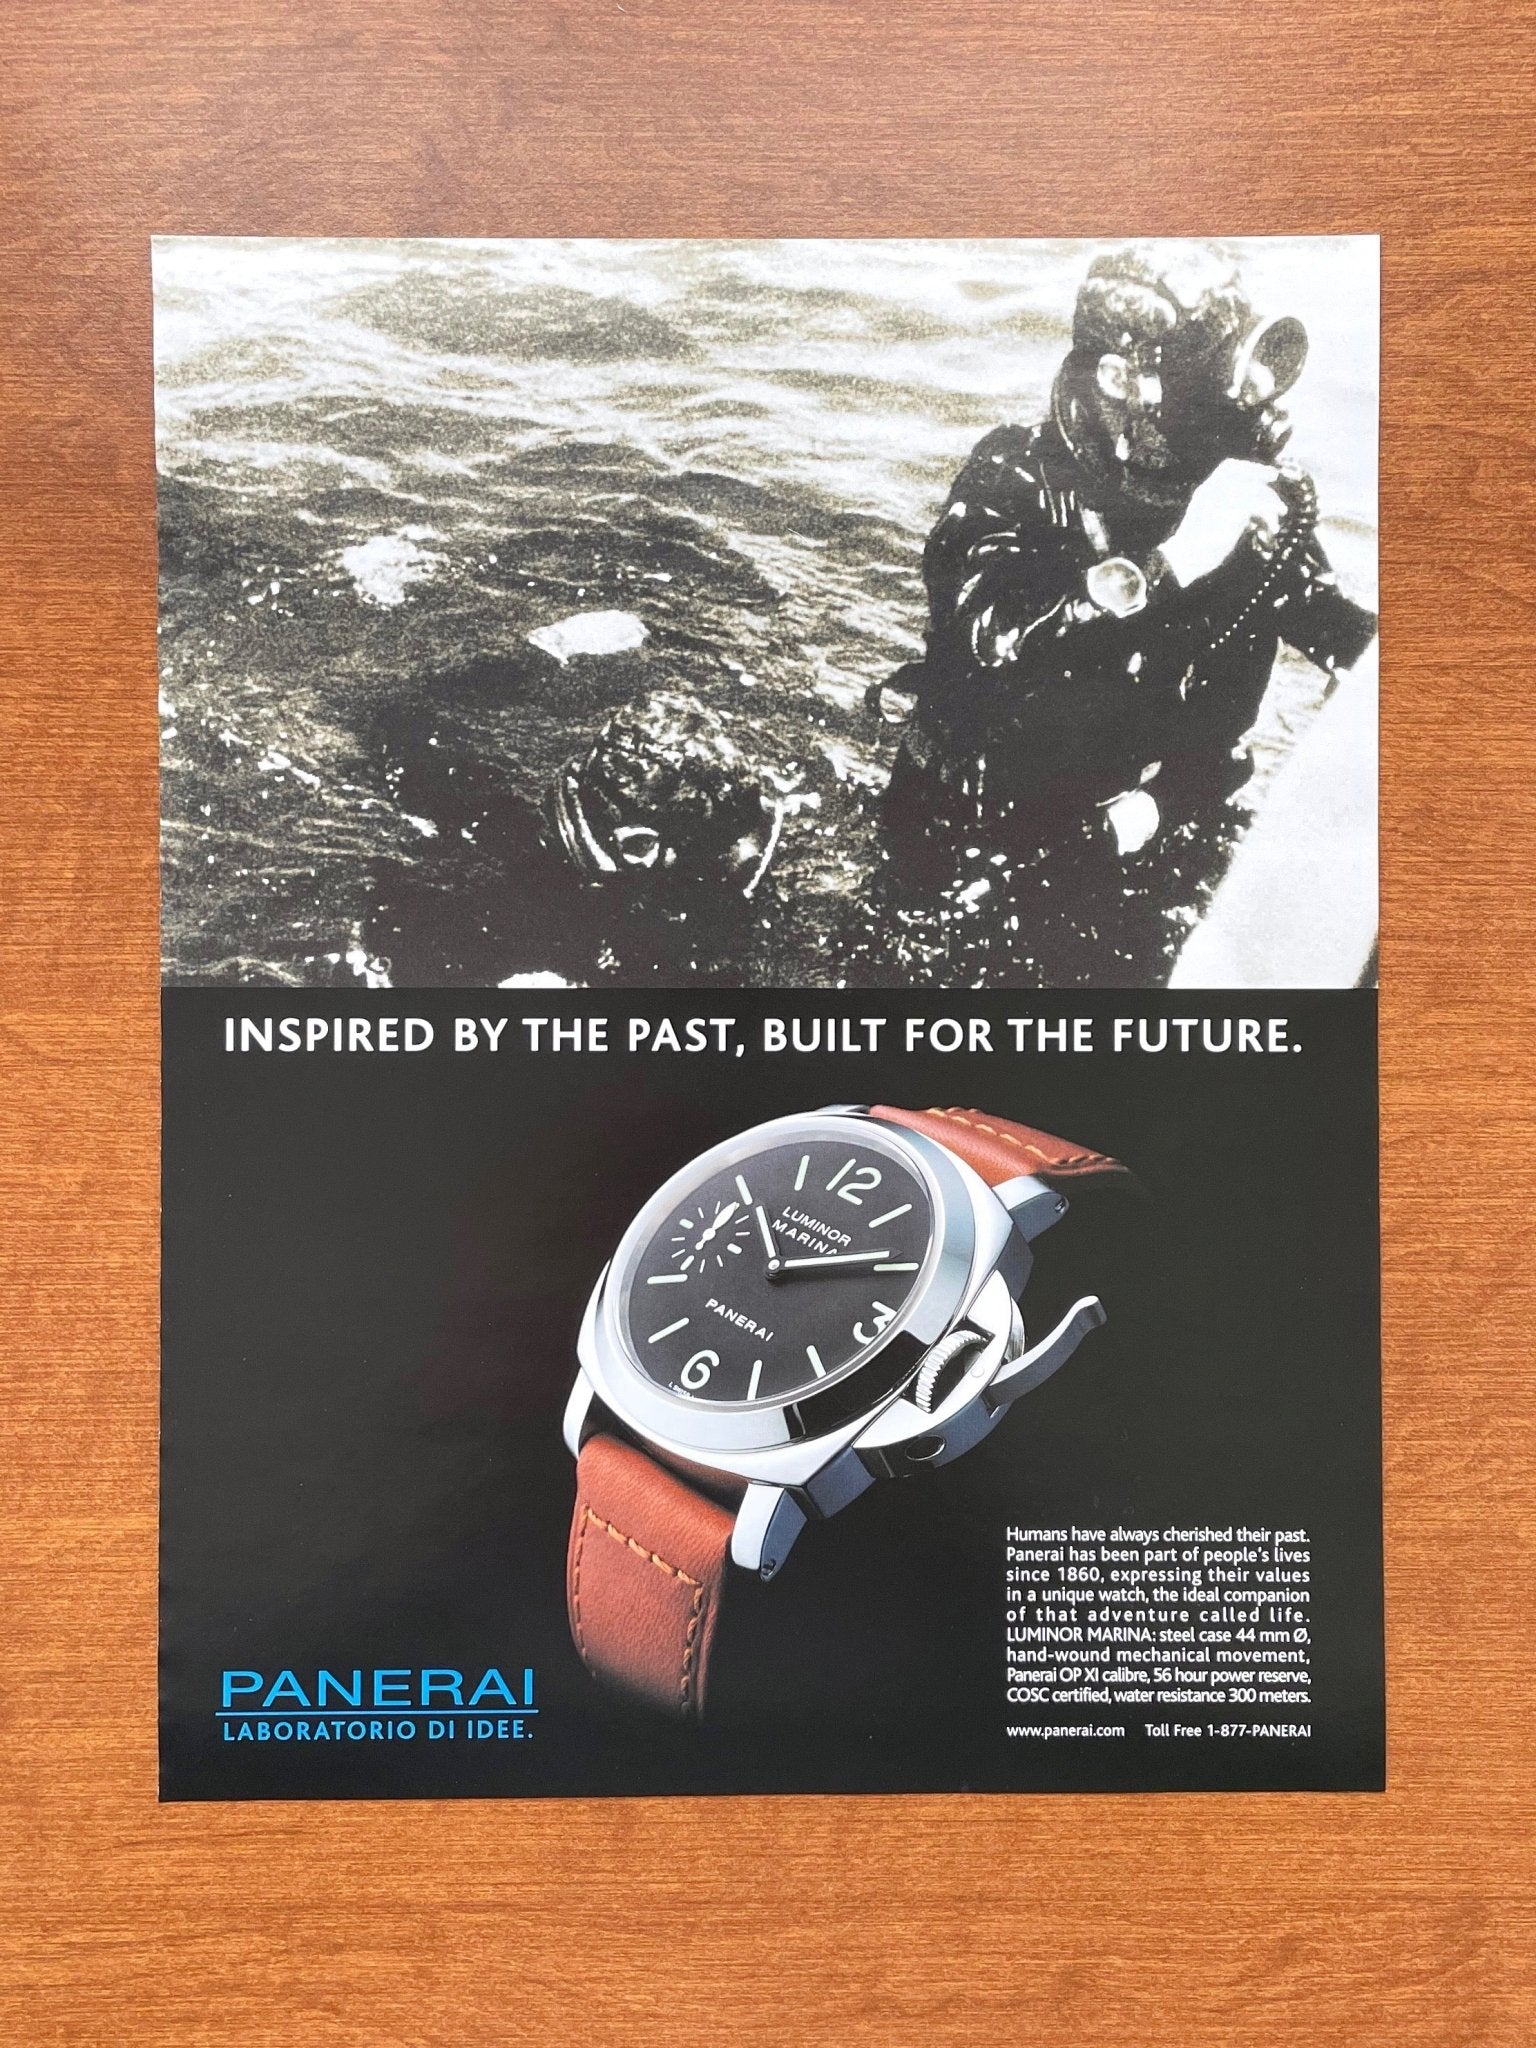 2007 Panerai Luminor Marina "Inspired by the Past..." Advertisement